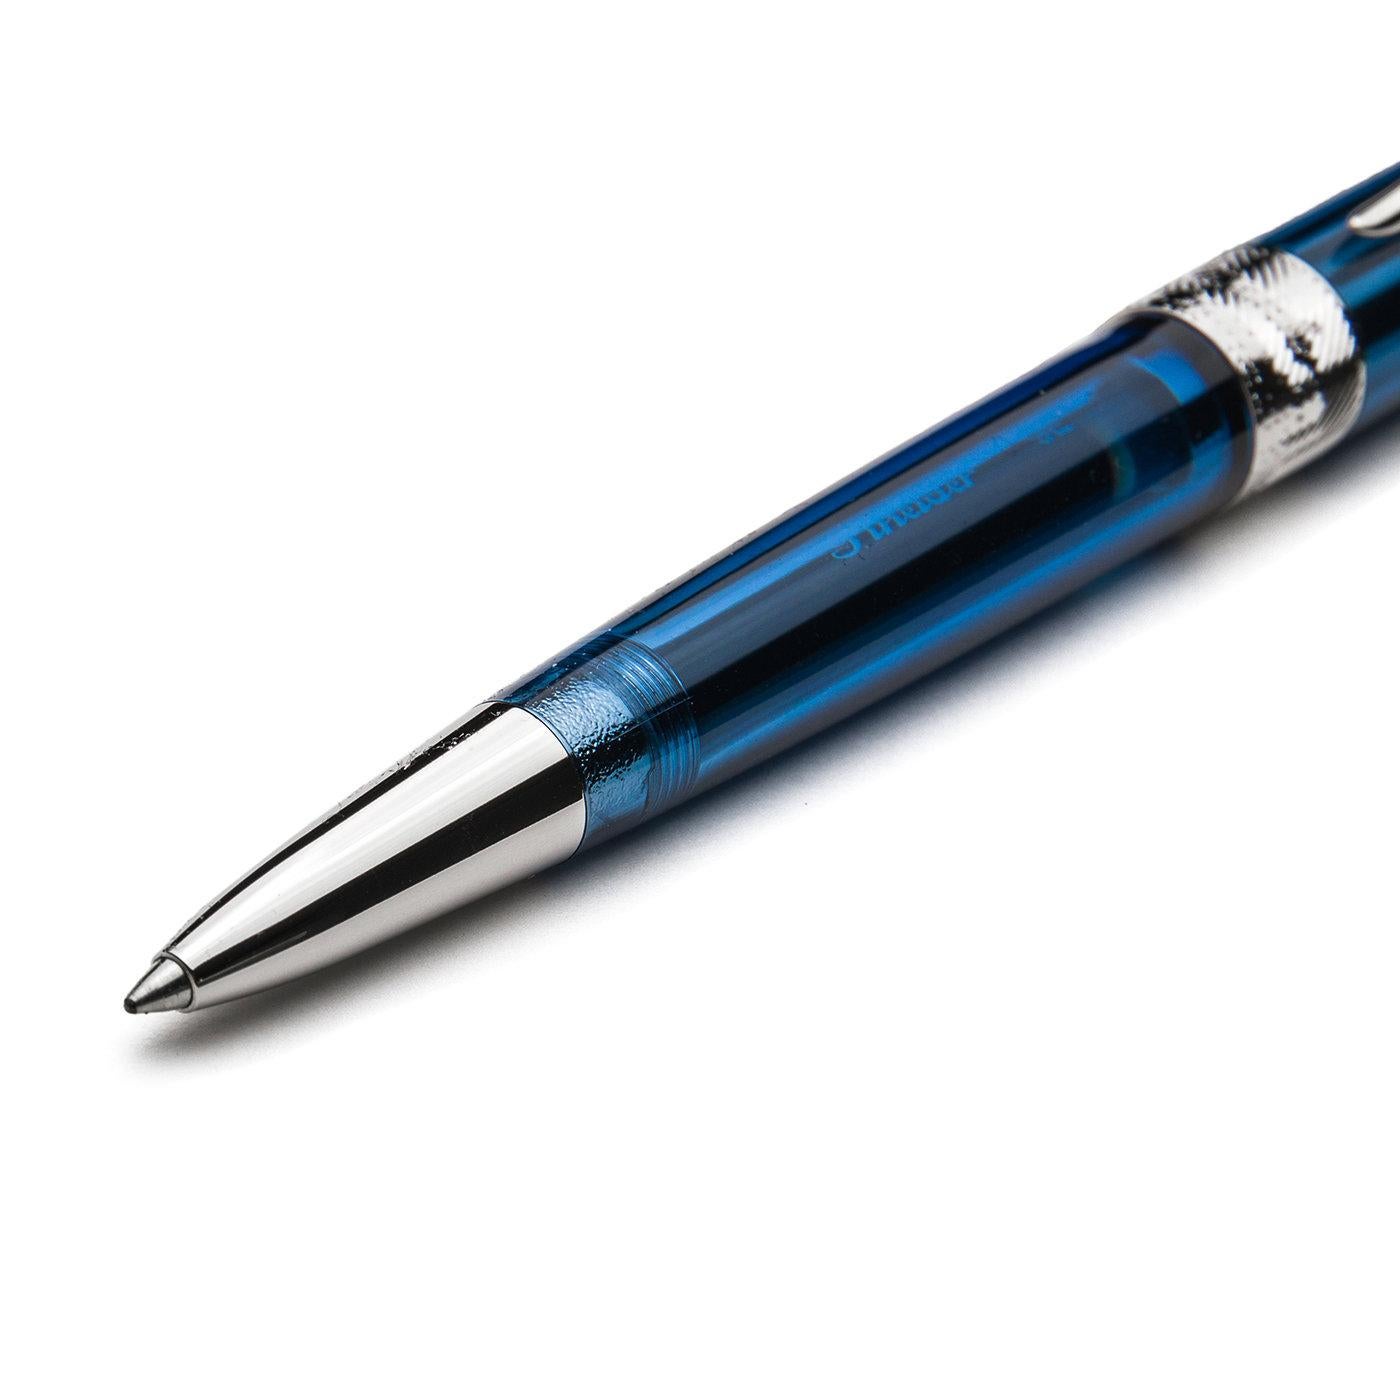 Dieser exklusive blaue Kugelschreiber ist in mehreren Farben erhältlich und steht für technische und ästhetische Spitzenleistungen. Ihre Silhouette besteht aus perfekt ineinander greifenden Teilen, die mit Hilfe von Klebstoffen hergestellt werden,